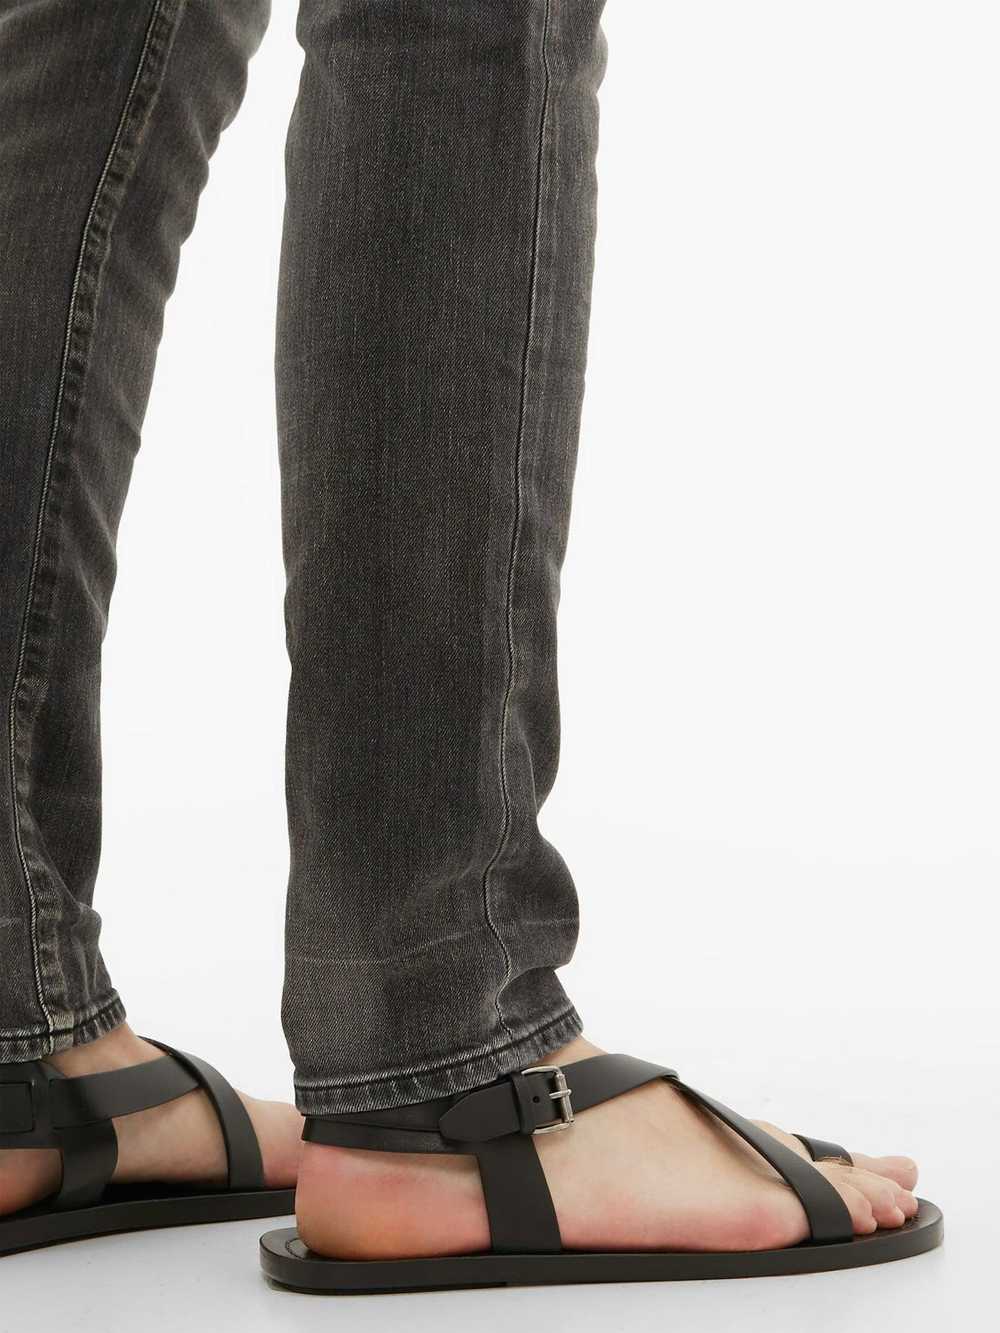 Saint Laurent Paris Leather Strap Sandals - image 5